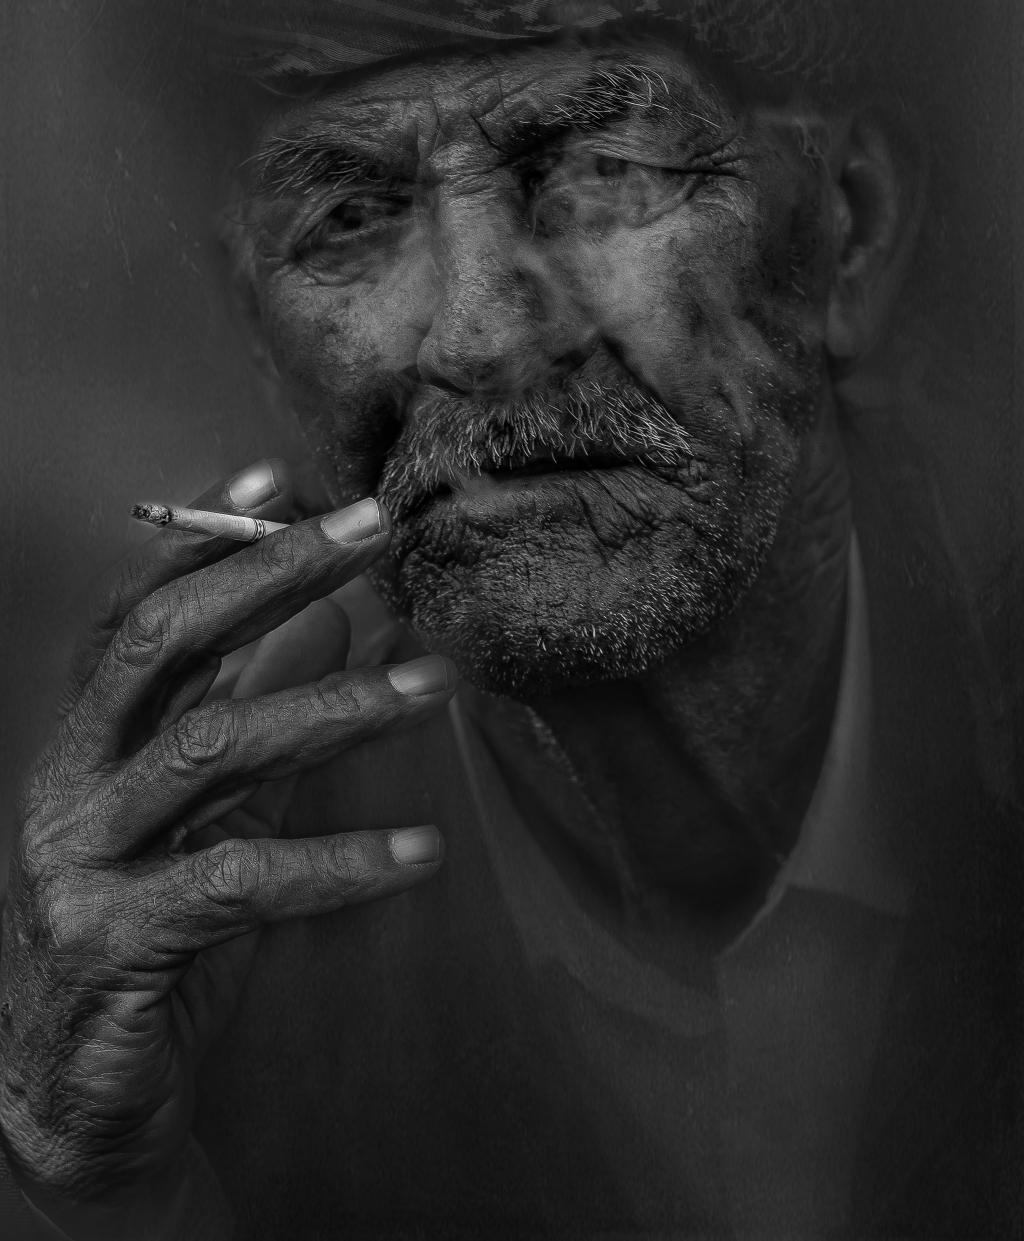 材料を入力 スイートイritz 市ゃお私は 壁紙 男性 喫煙 タバコ 古い 高齢者 肖像画 高精細画像を叫び作っ者喫煙 壁紙